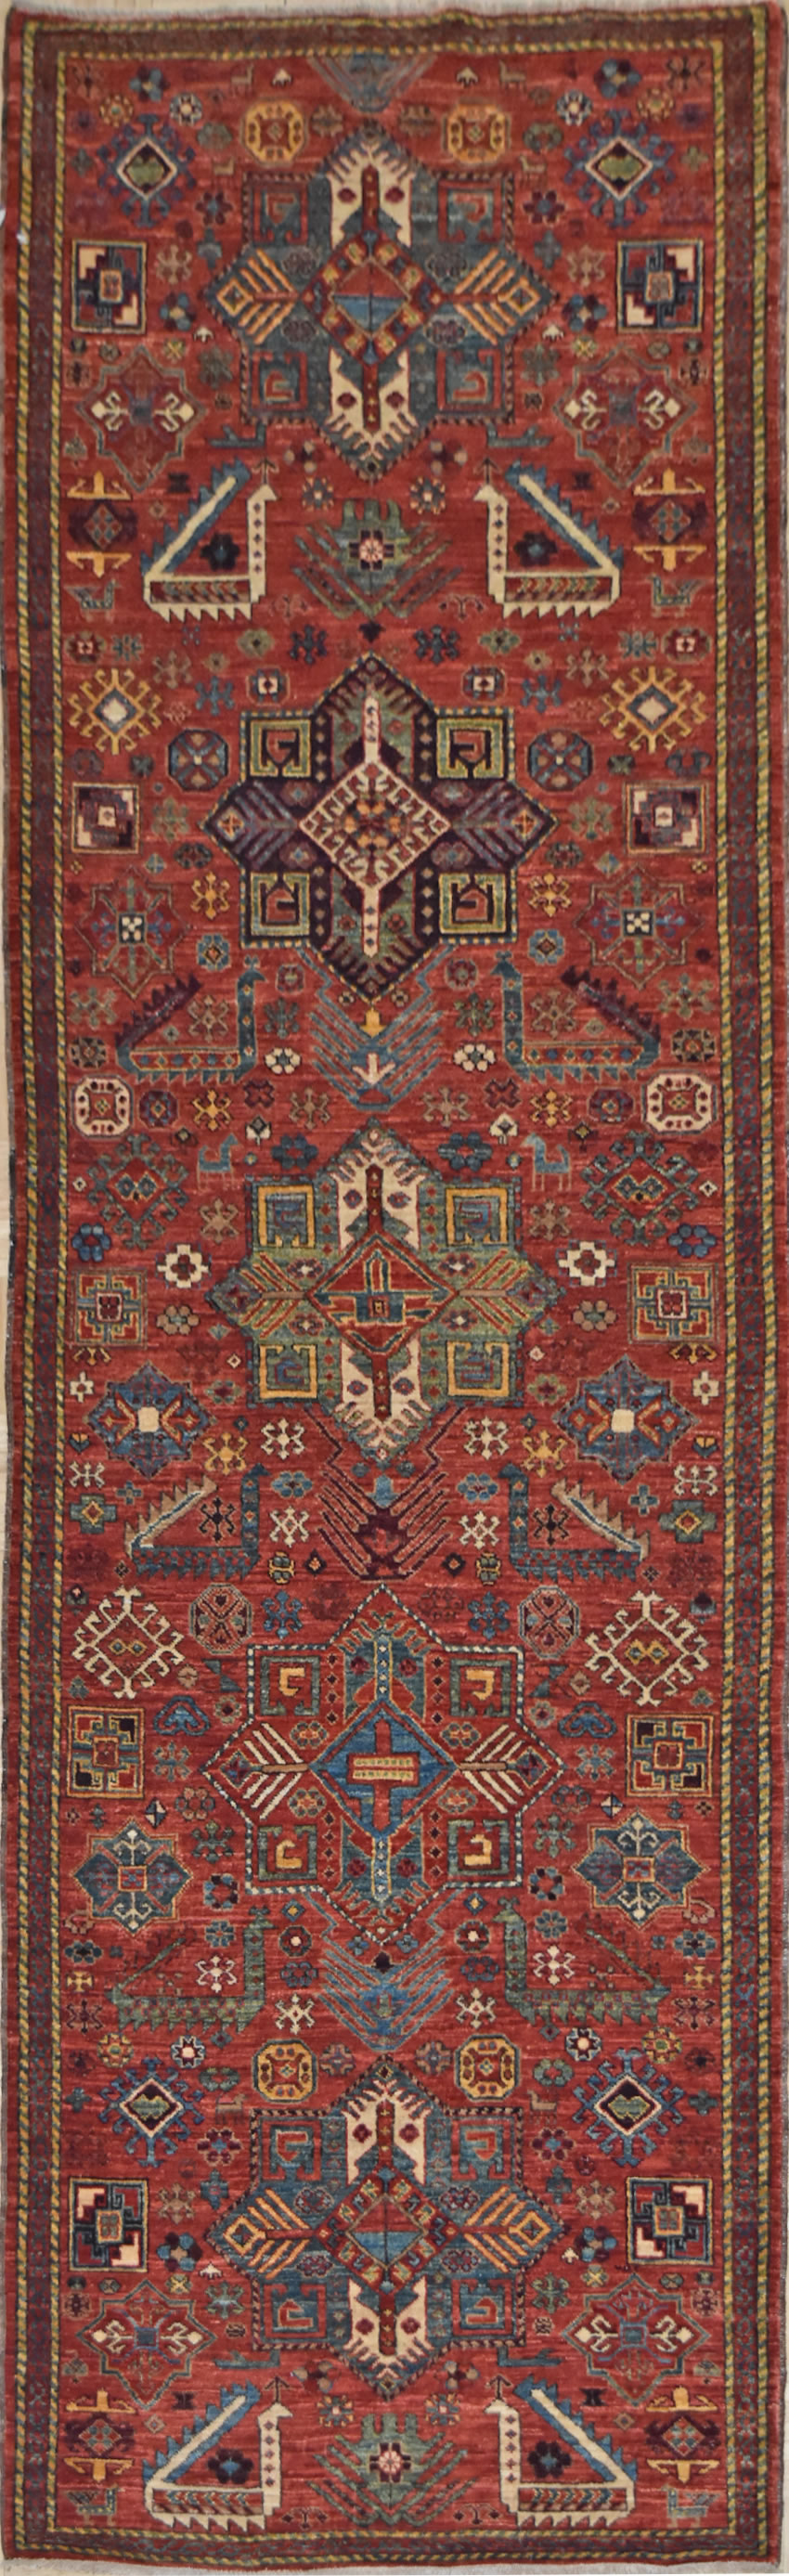 2'7 x 9'8 Veg dye hand knotted kazak rug runner - hallway runner rug - hand  spun wool rug